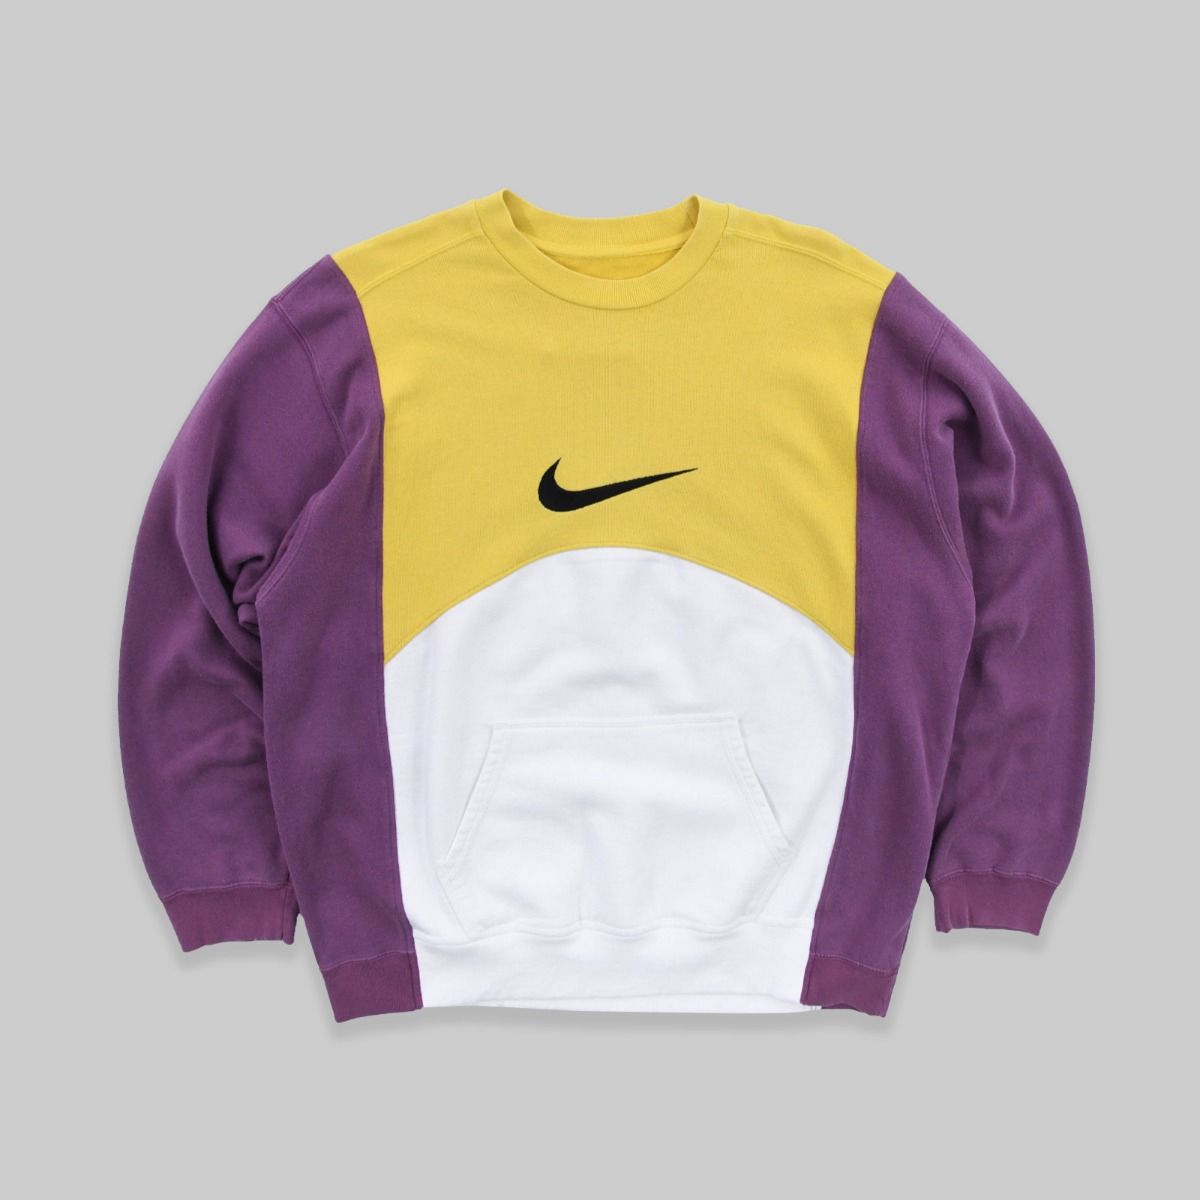 Nike REWORKED 1990s Sweatshirt